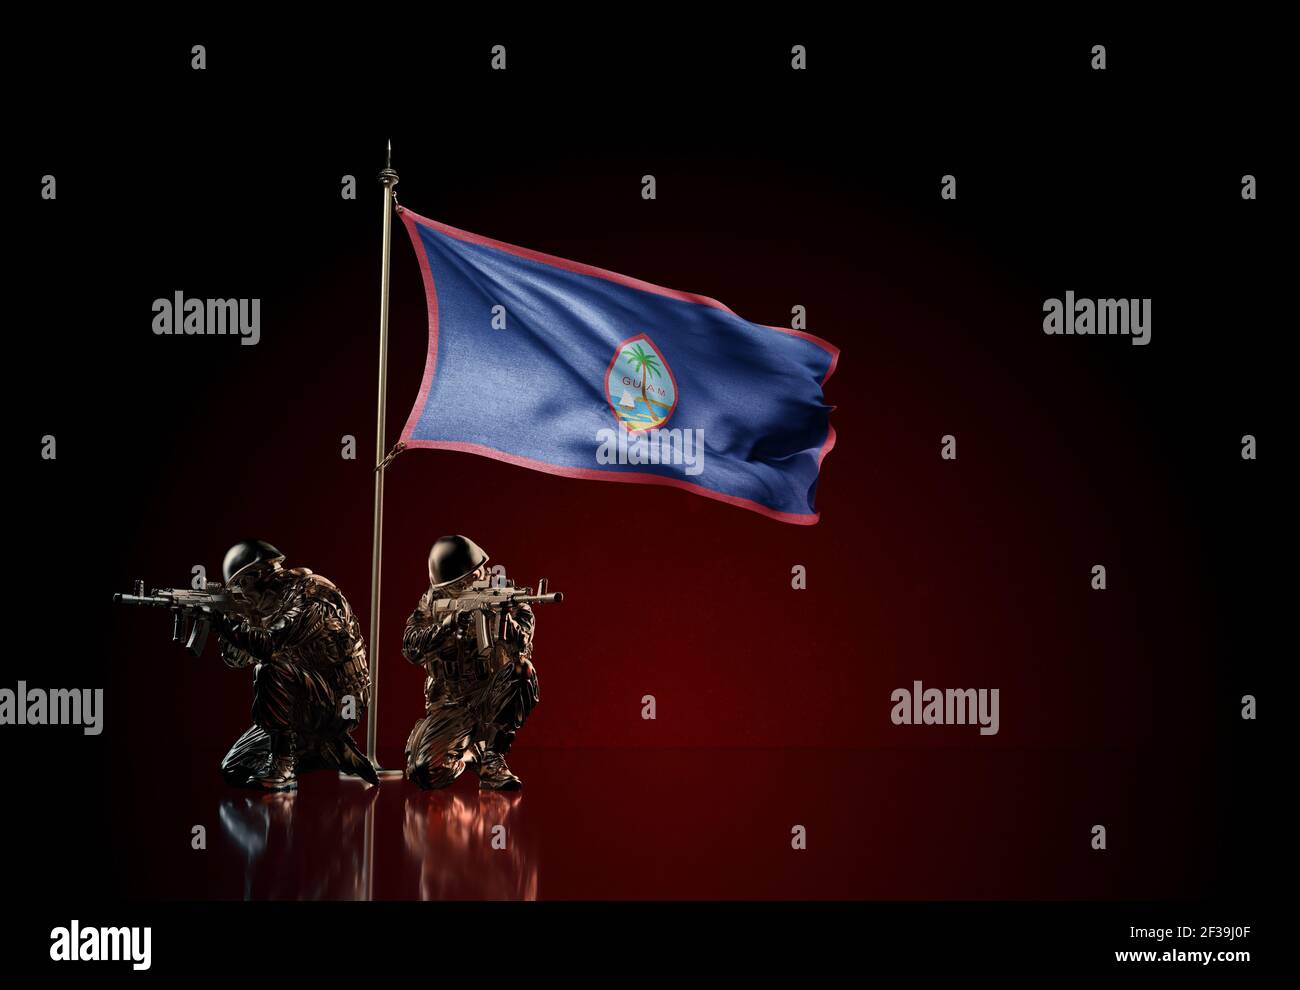 Konzept des militärischen Konflikts mit Soldaten Statuen und winkende Nationalflagge von Guam. Illustration der Coup-Idee. Zwei Wachen verteidigen das Symbol Stockfoto